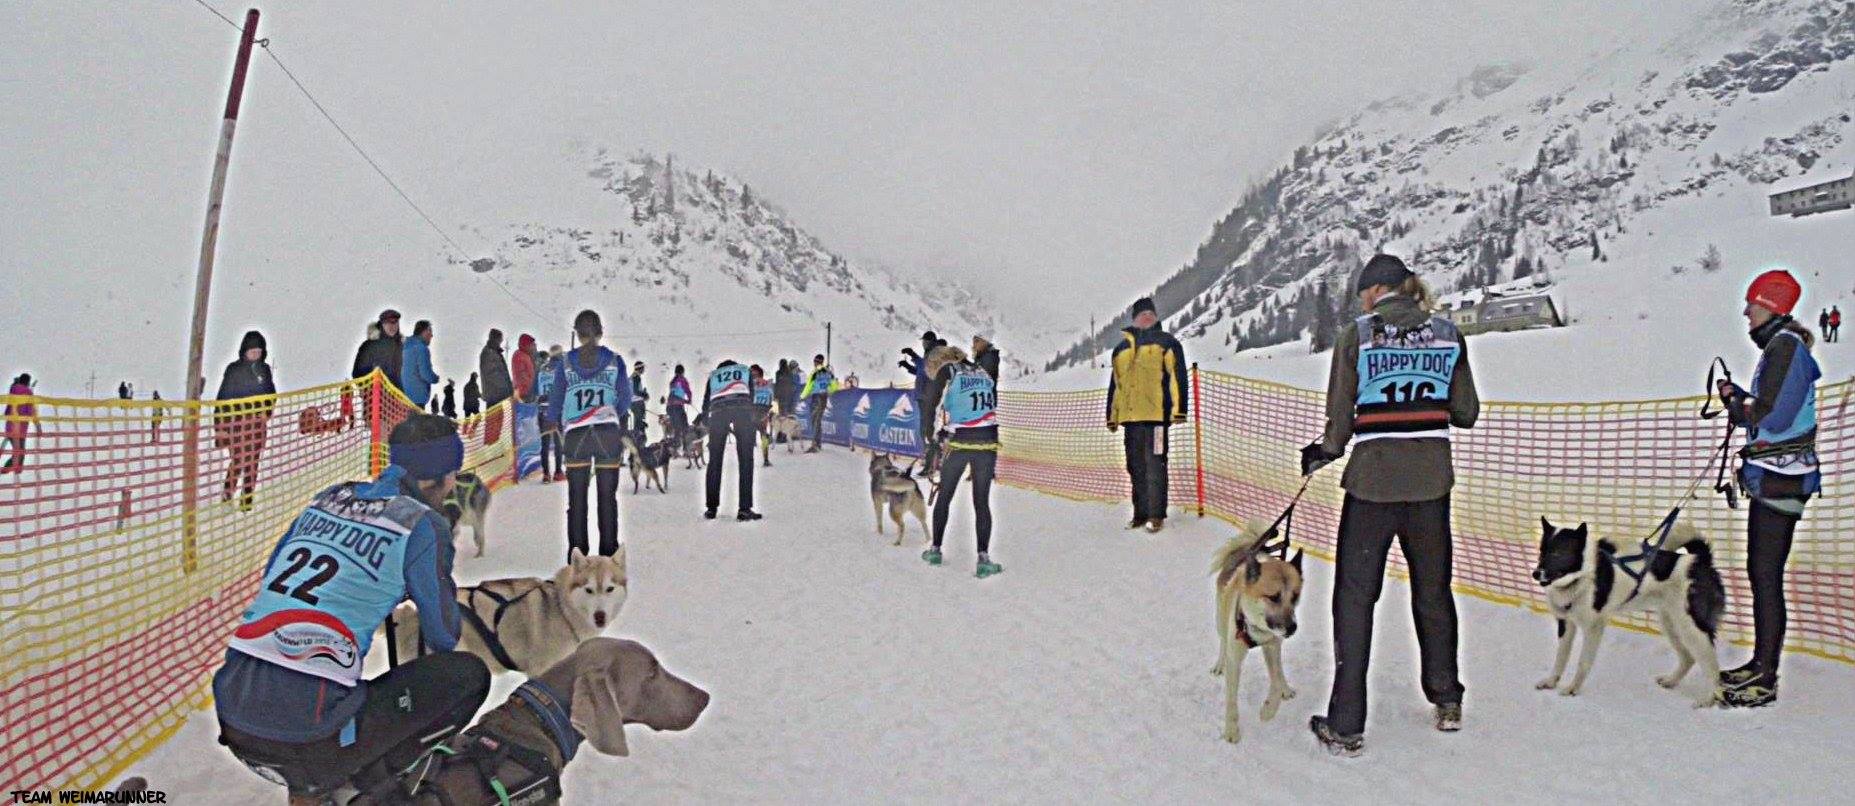 DerHundling-Sportgastein-SchneeCanicross